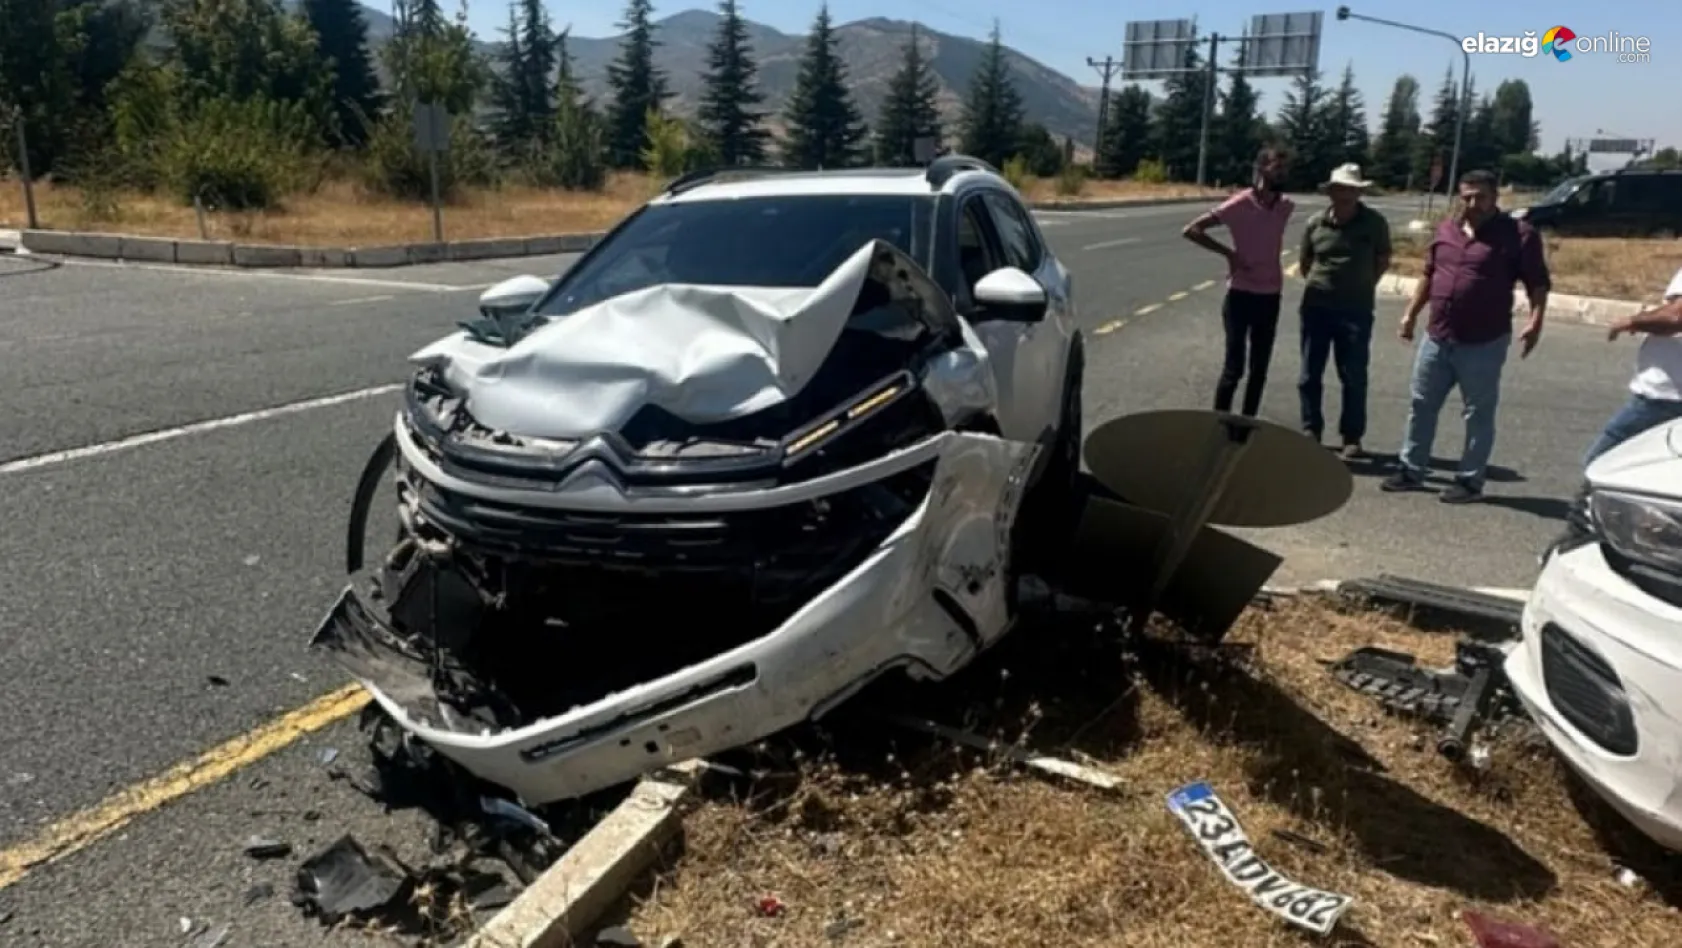 Elazığ Gözeli kavşağı'nda trafik kazası!